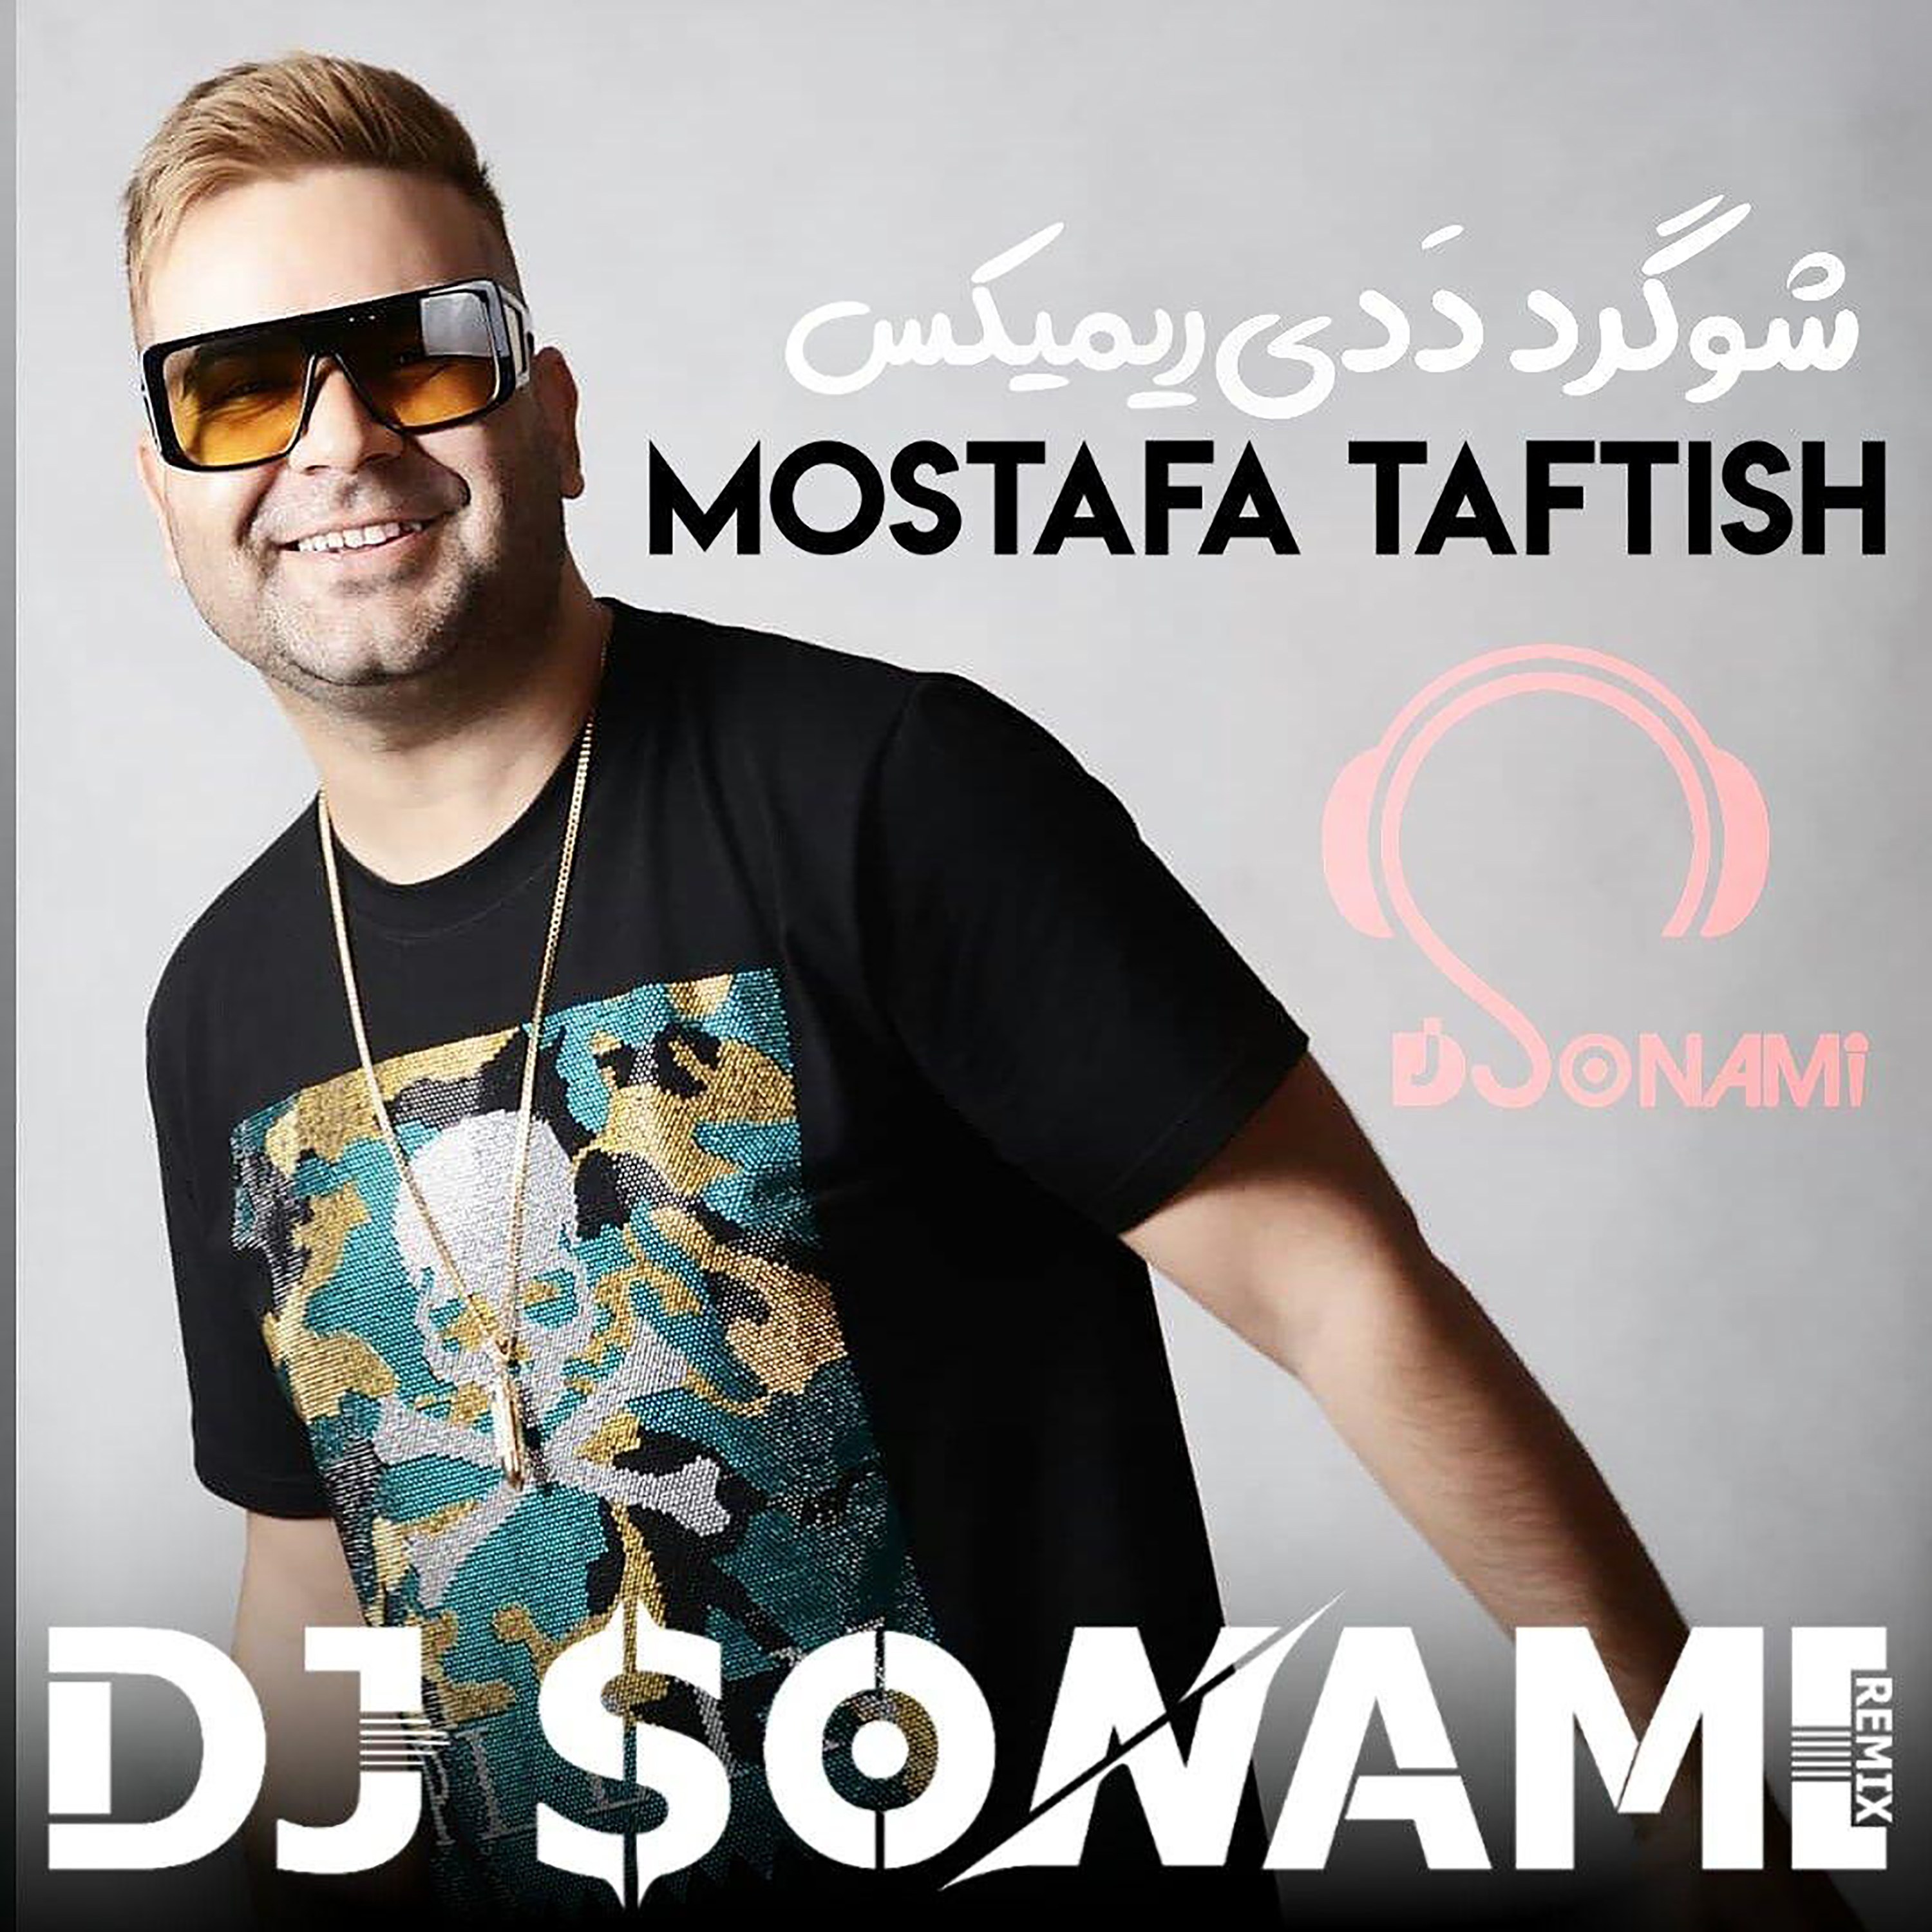  دانلود آهنگ جدید مصطفی تفتیش - شوگر ددی ( دی جی سونامی ریمیکس ) | Download New Music By Mostafa Taftish - Sugar Daddy (Remix By DJ Sonami)